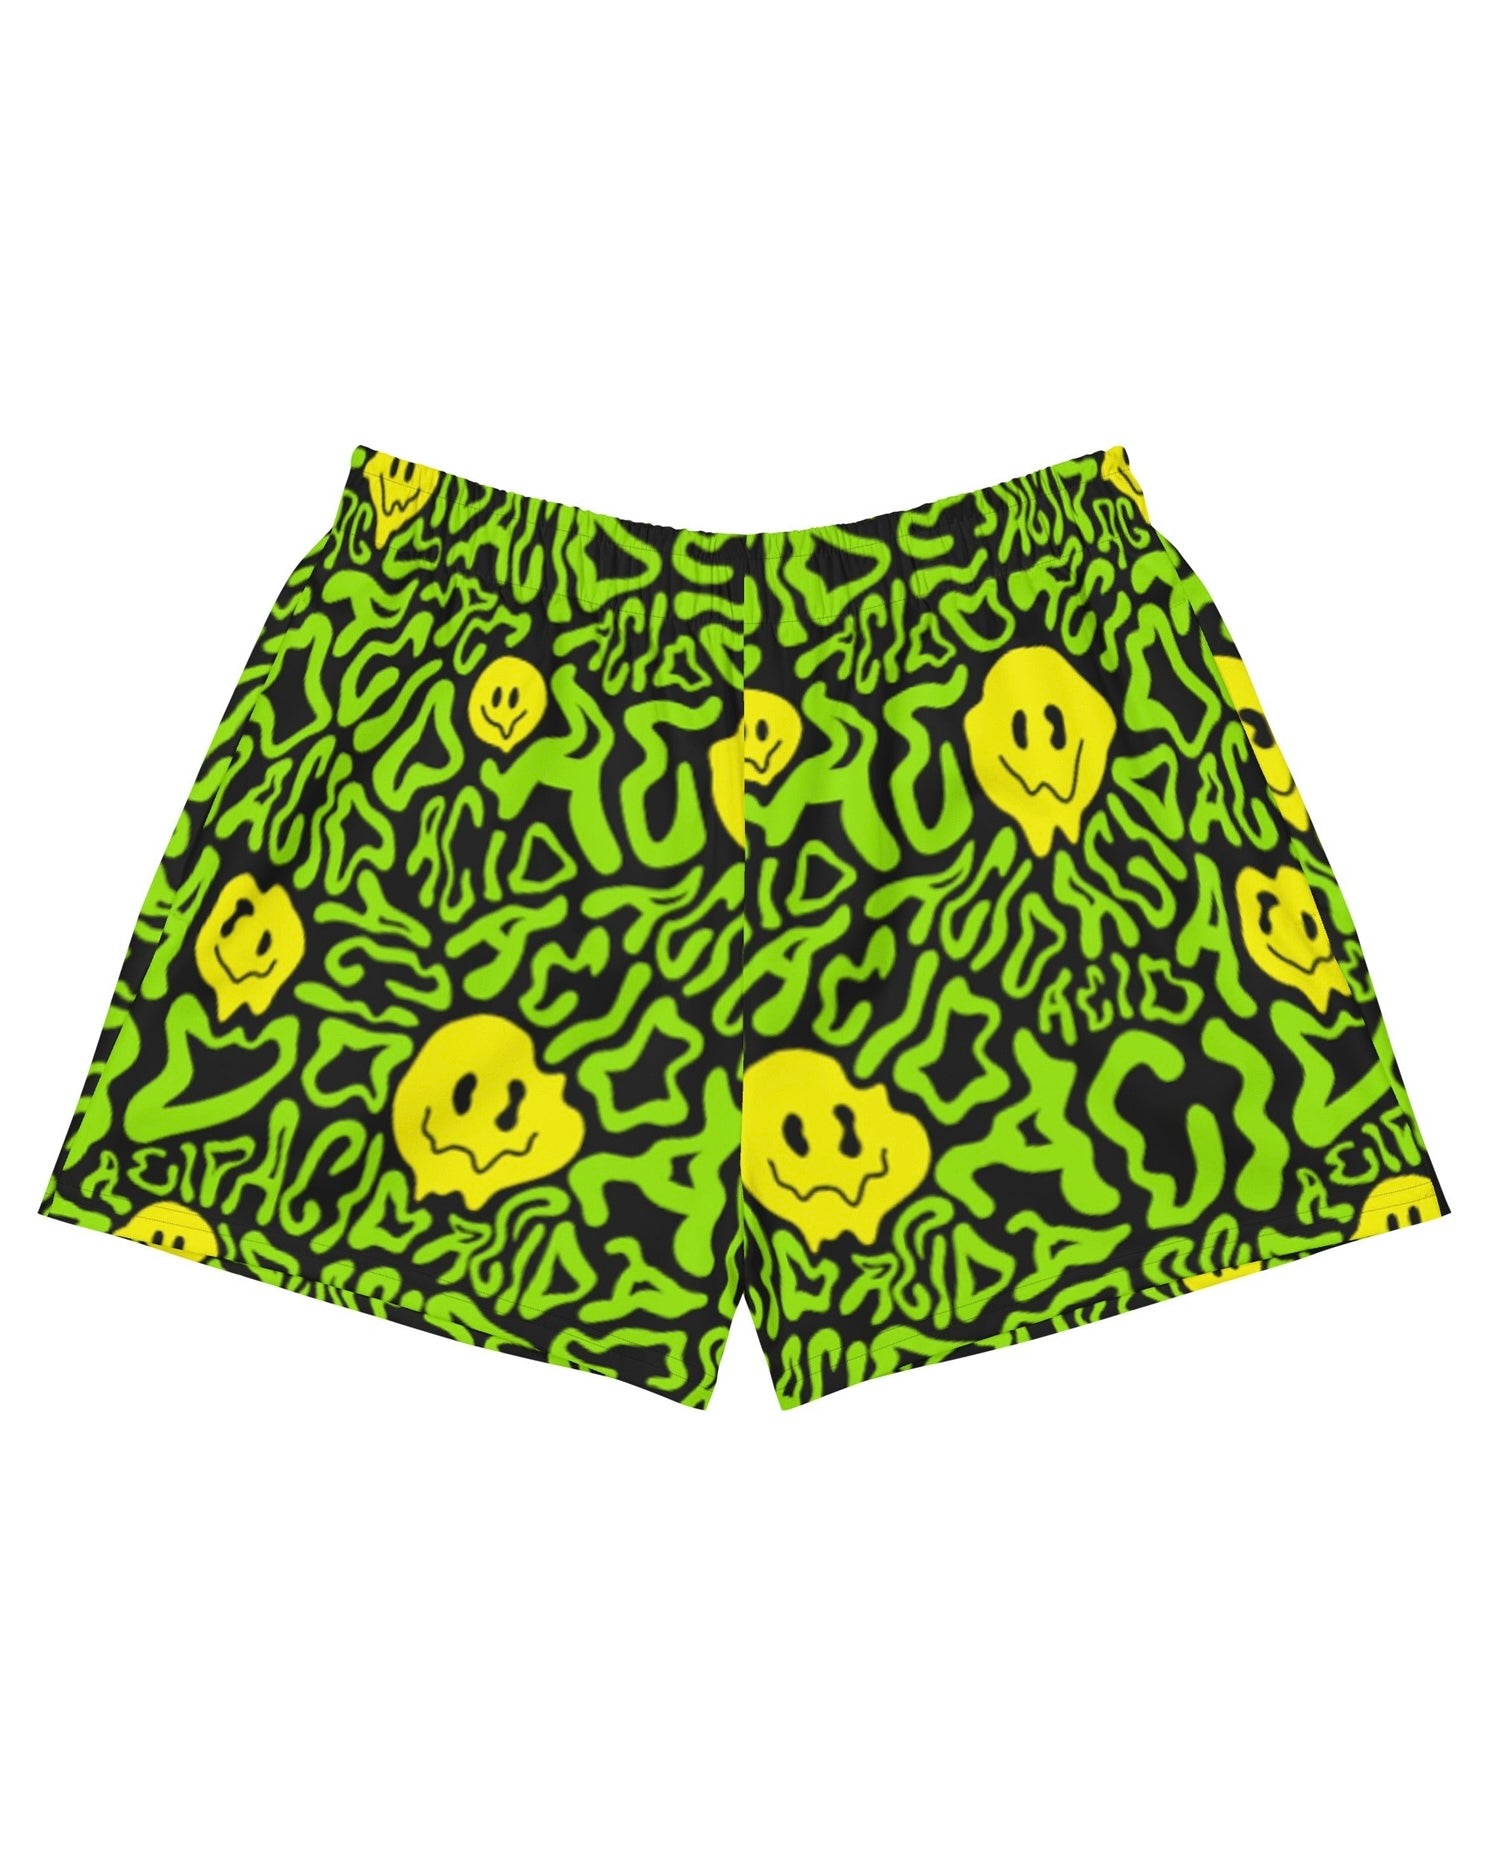 Acid Smilez Recycled Shorts, Athletic Shorts, - One Stop Rave